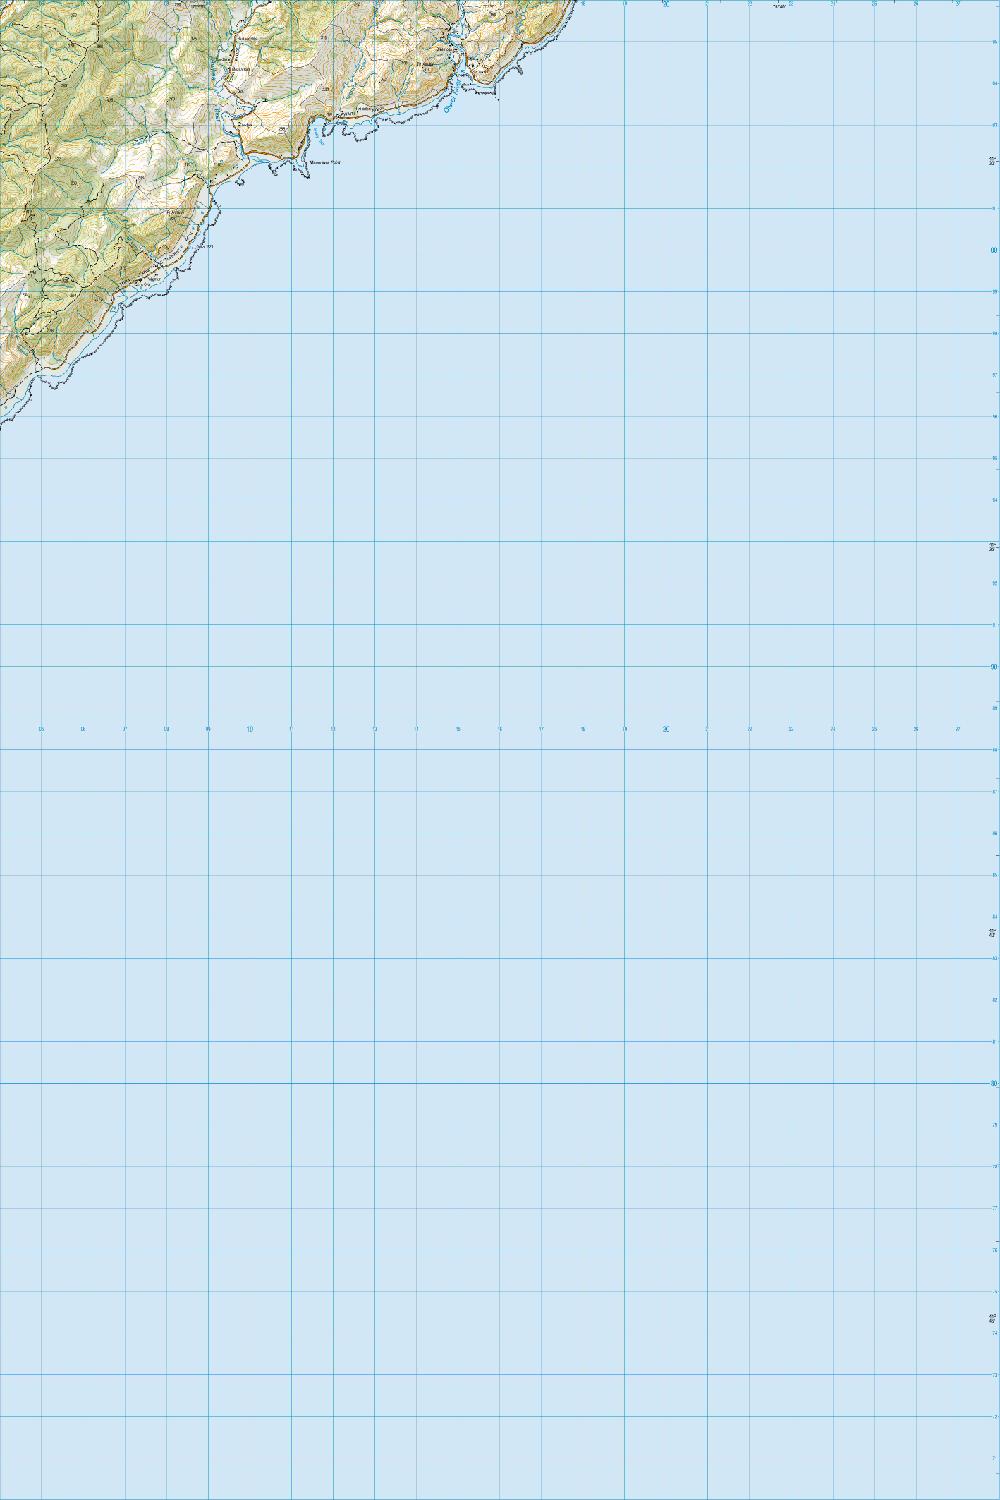 Topo map of Manurewa Point